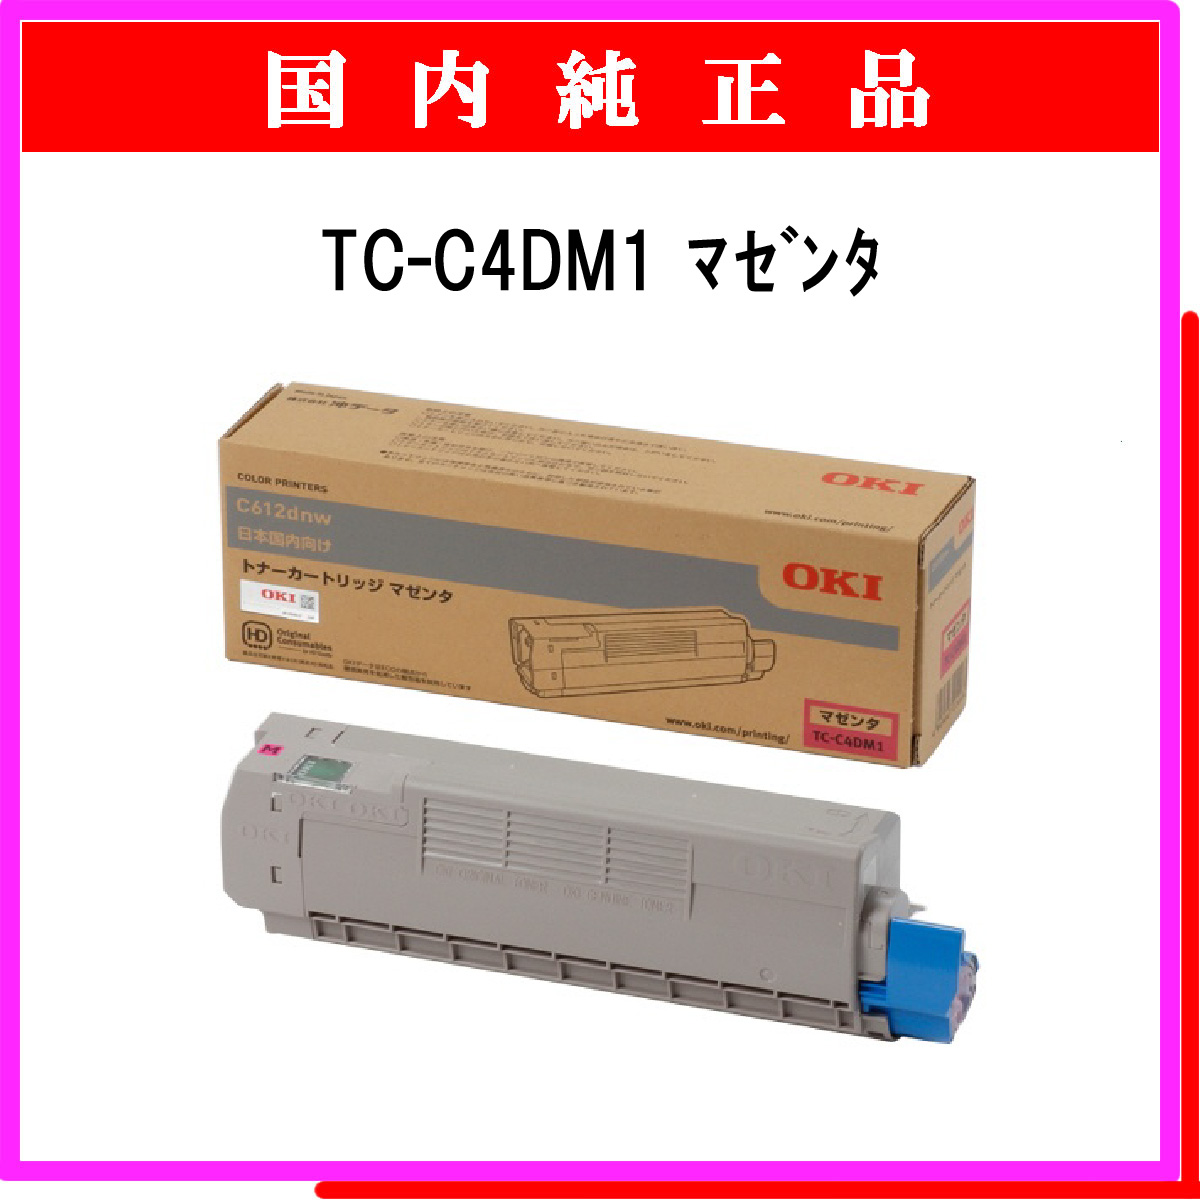 代引き人気 OKI [DR-C4DM] イメージドラム マゼンタ (C612dnw) プリンター・FAX用インク